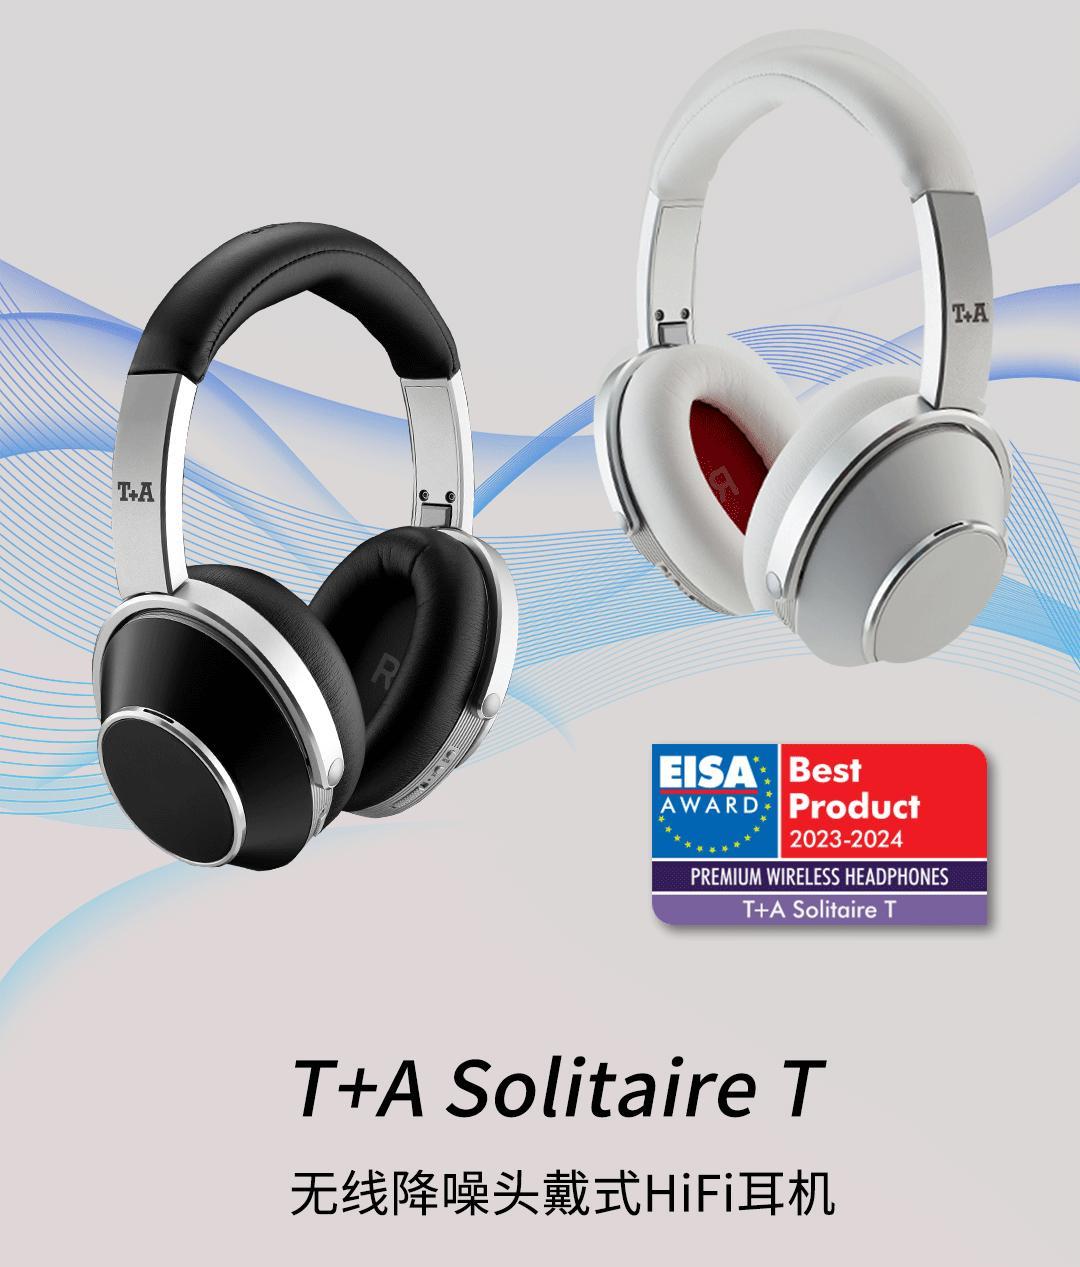 德国T+A 听佳音 Solitaire T 无线降噪头戴式HiFi耳机 荣获：EISA 2023年最佳无线耳机大奖